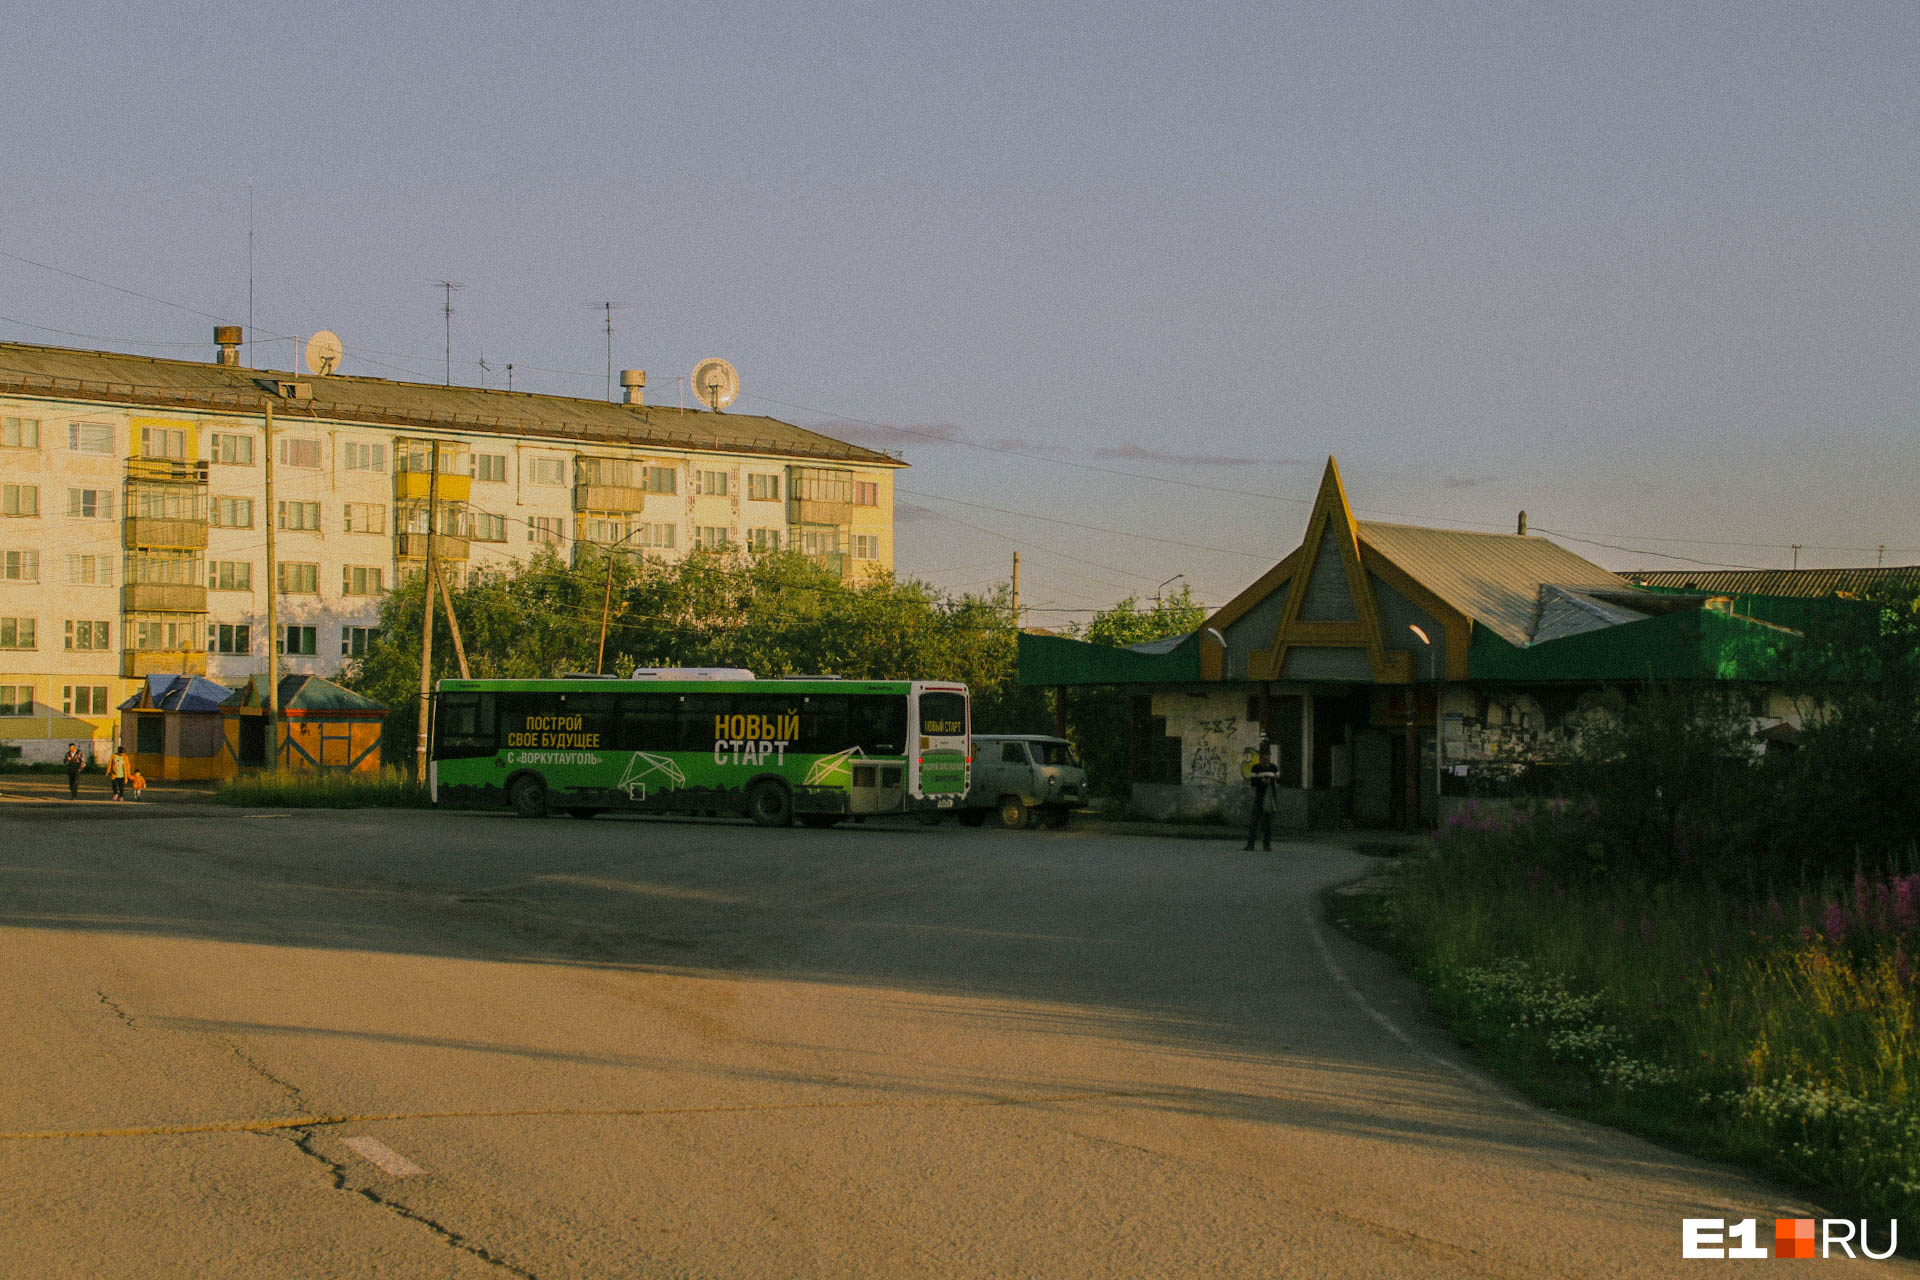 Одна из автобусных остановок